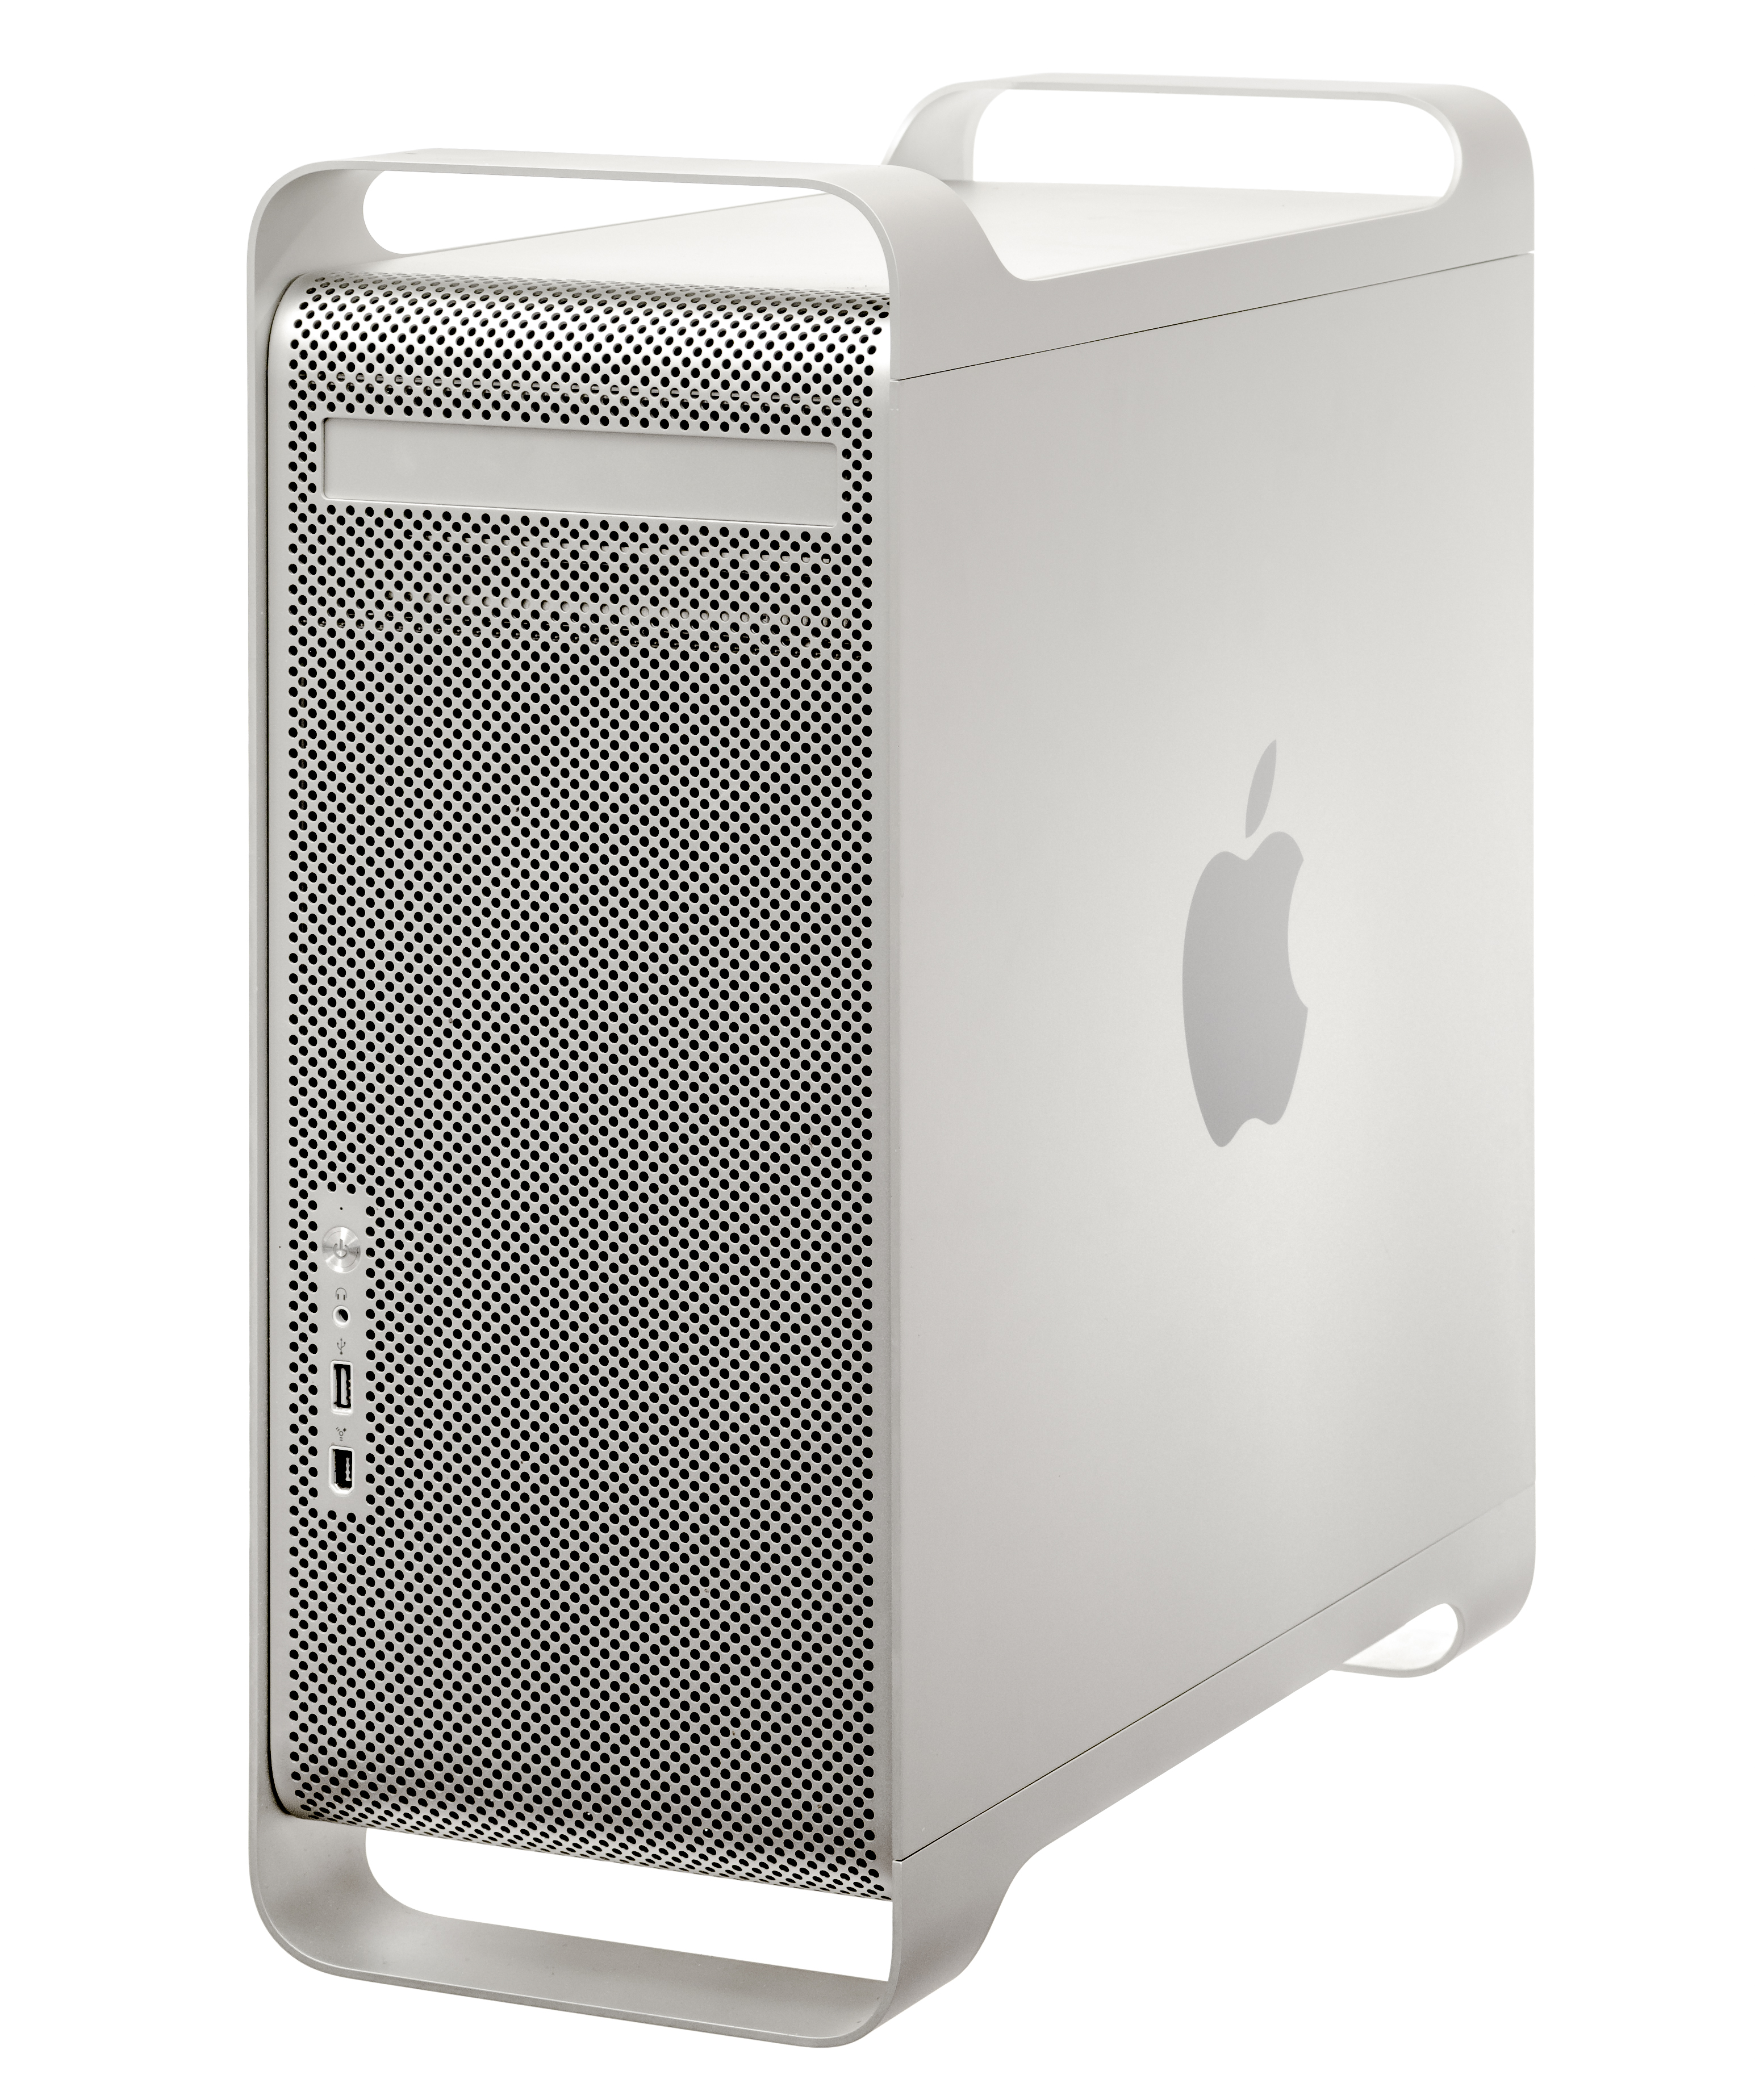 Apple A1047 Power Mac G5 PowerPC 970 Tower